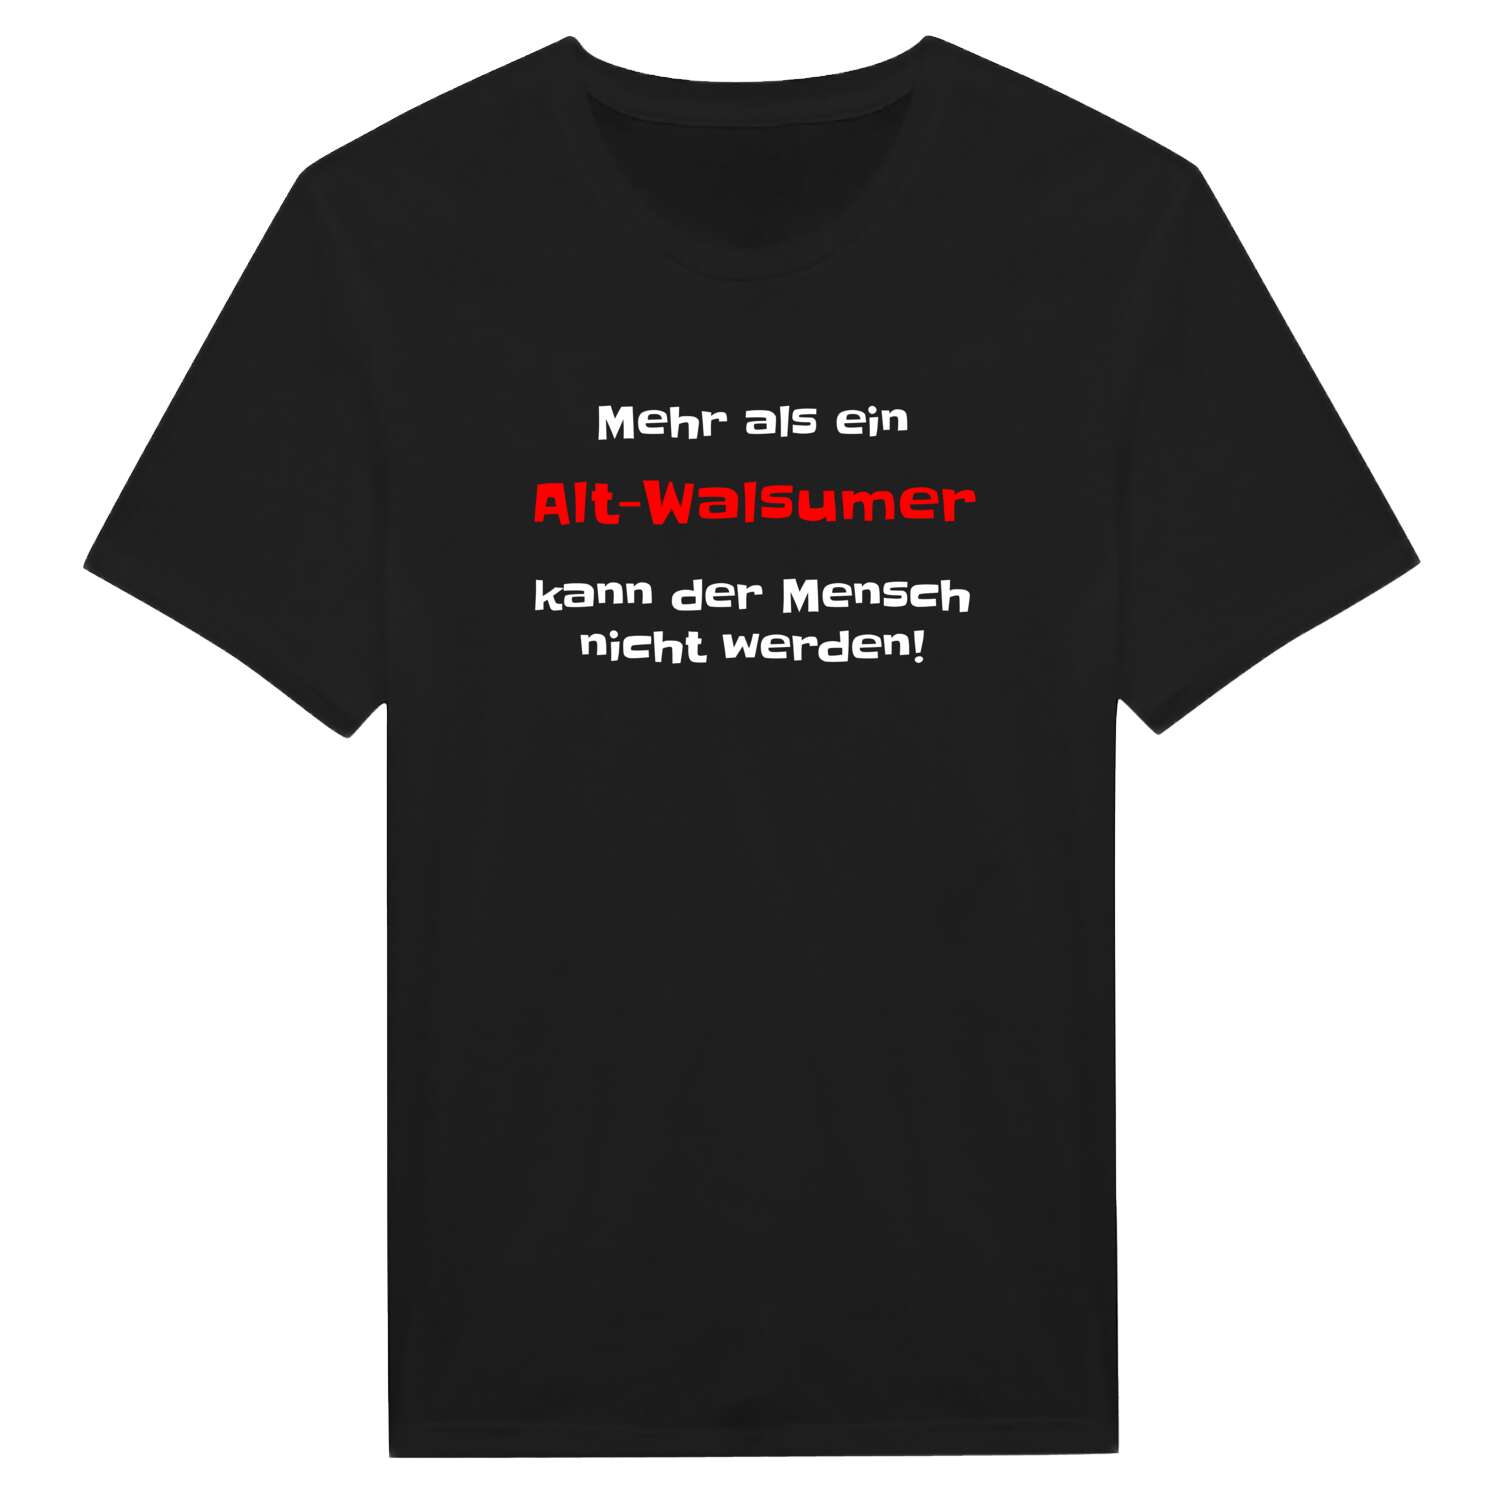 Alt-Walsum T-Shirt »Mehr als ein«